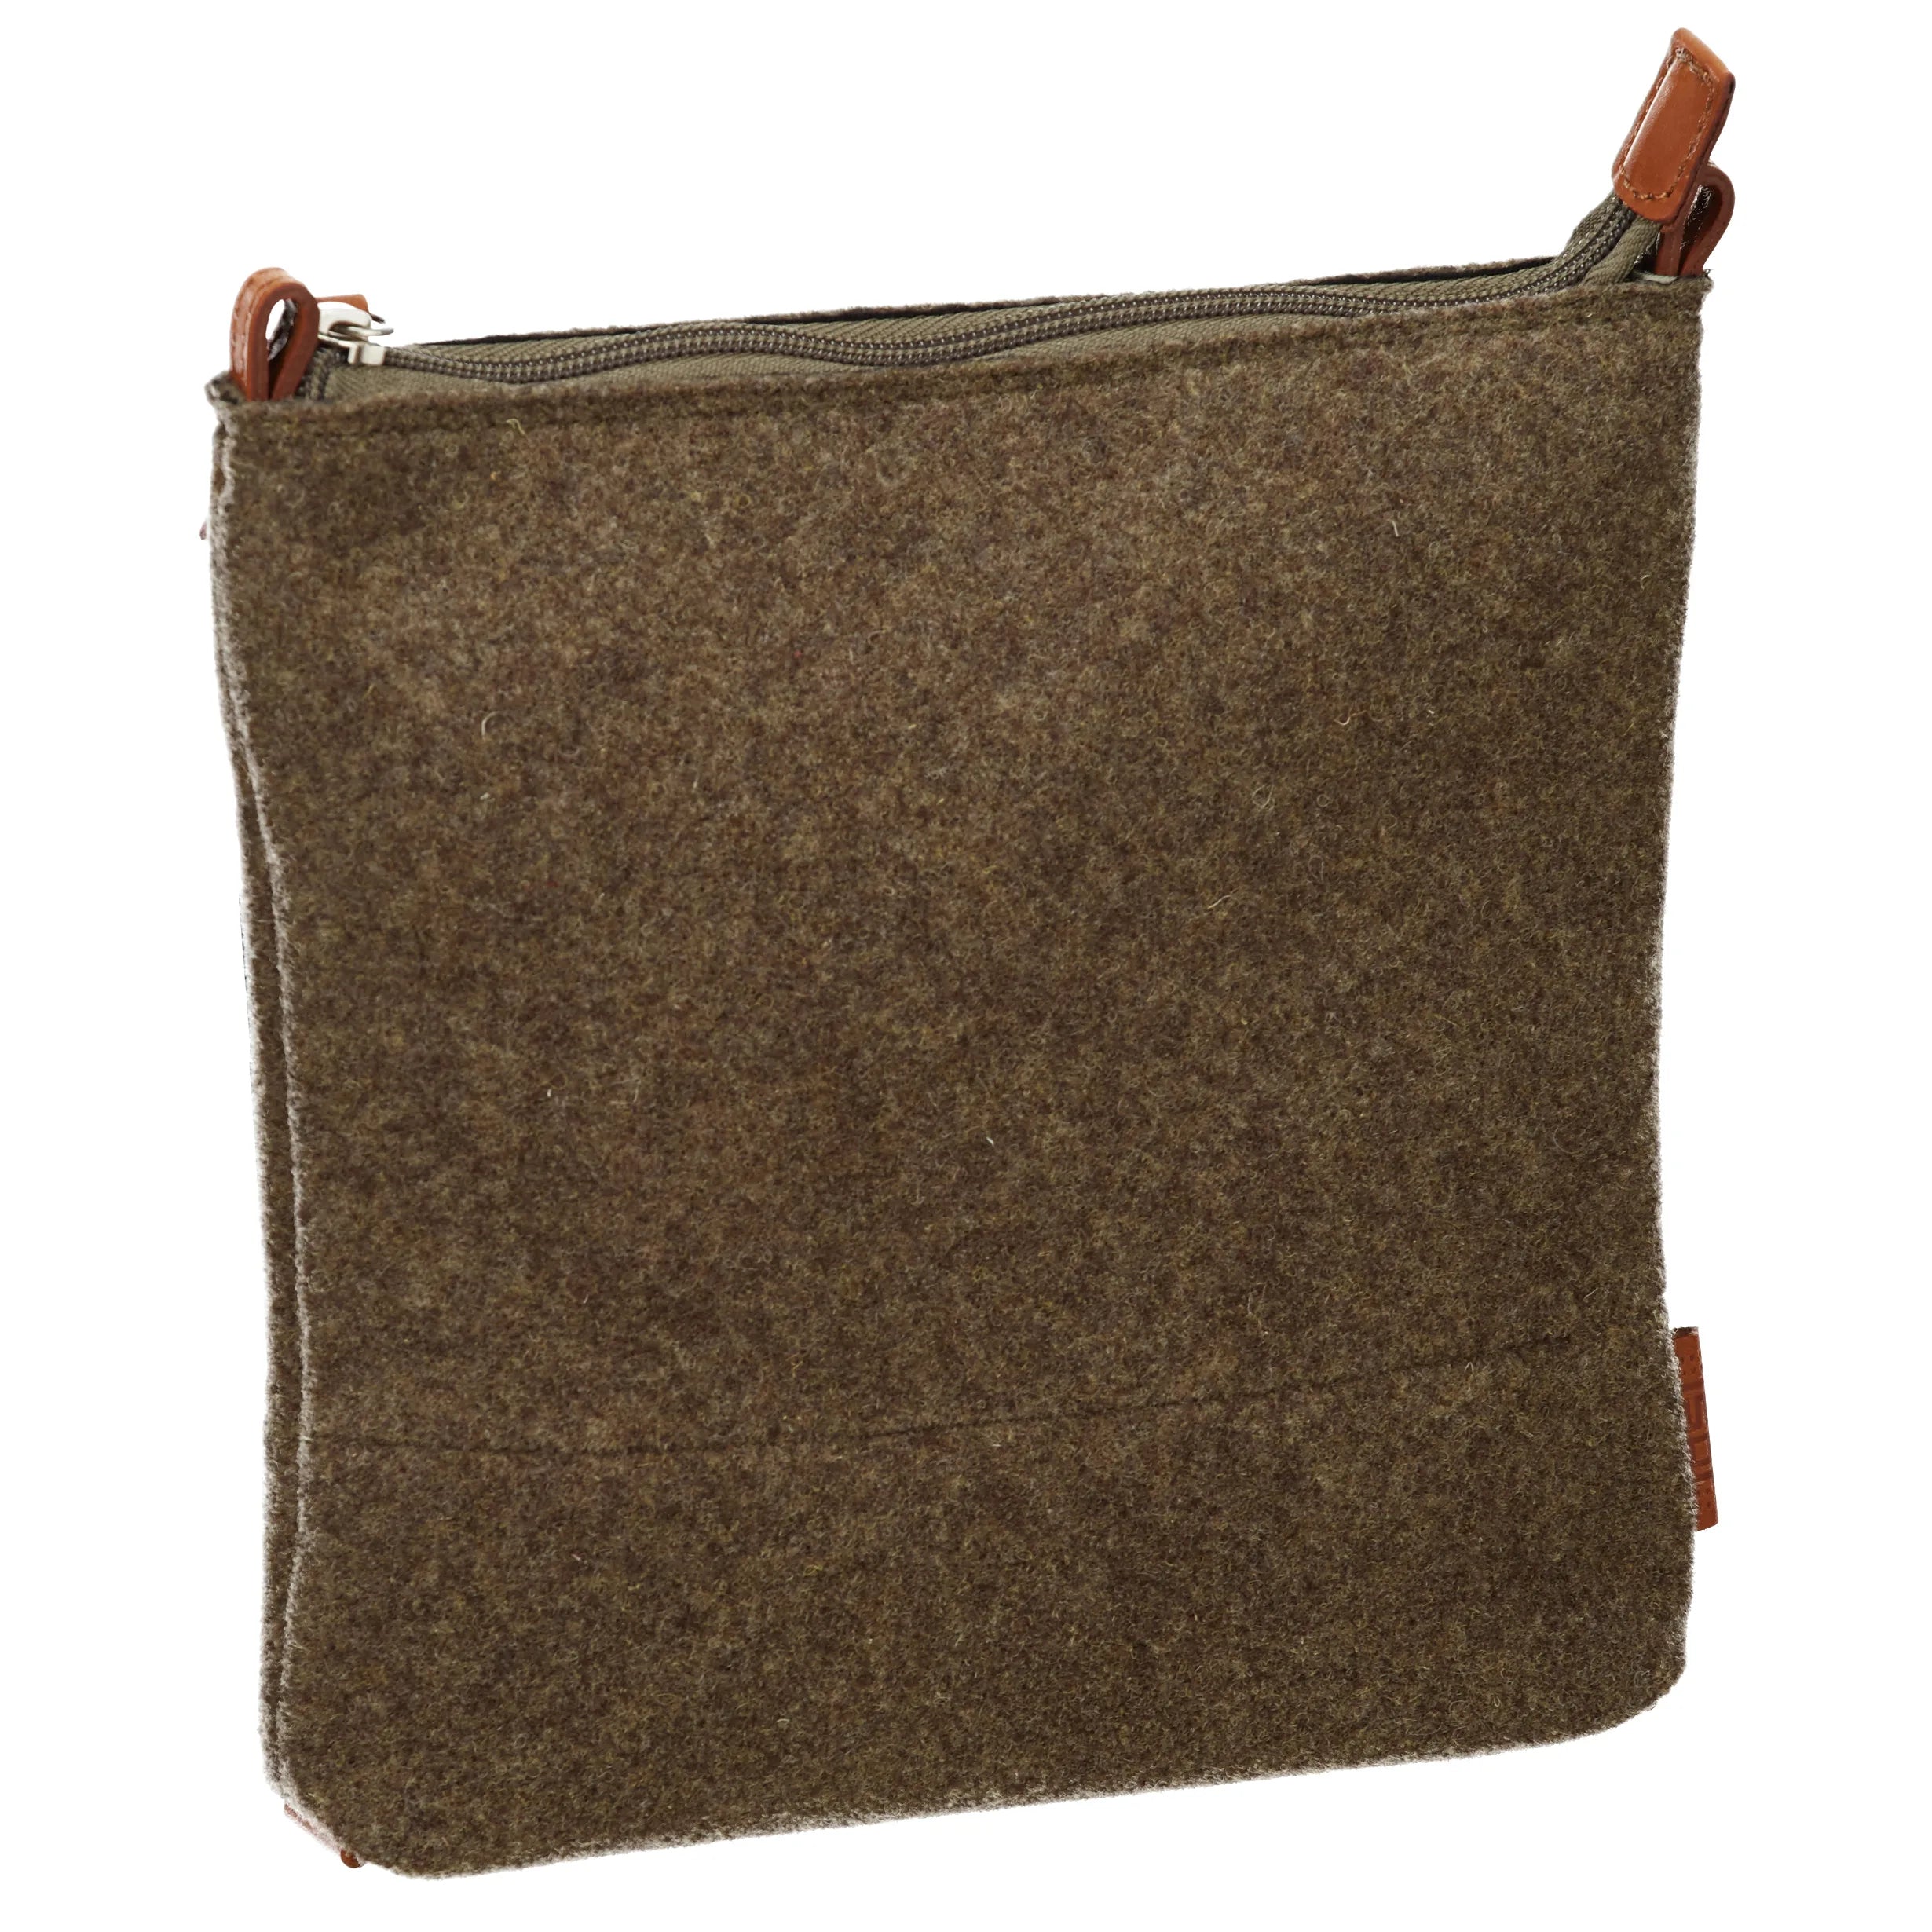 Jost Farum shoulder bag XS 22 cm - brown